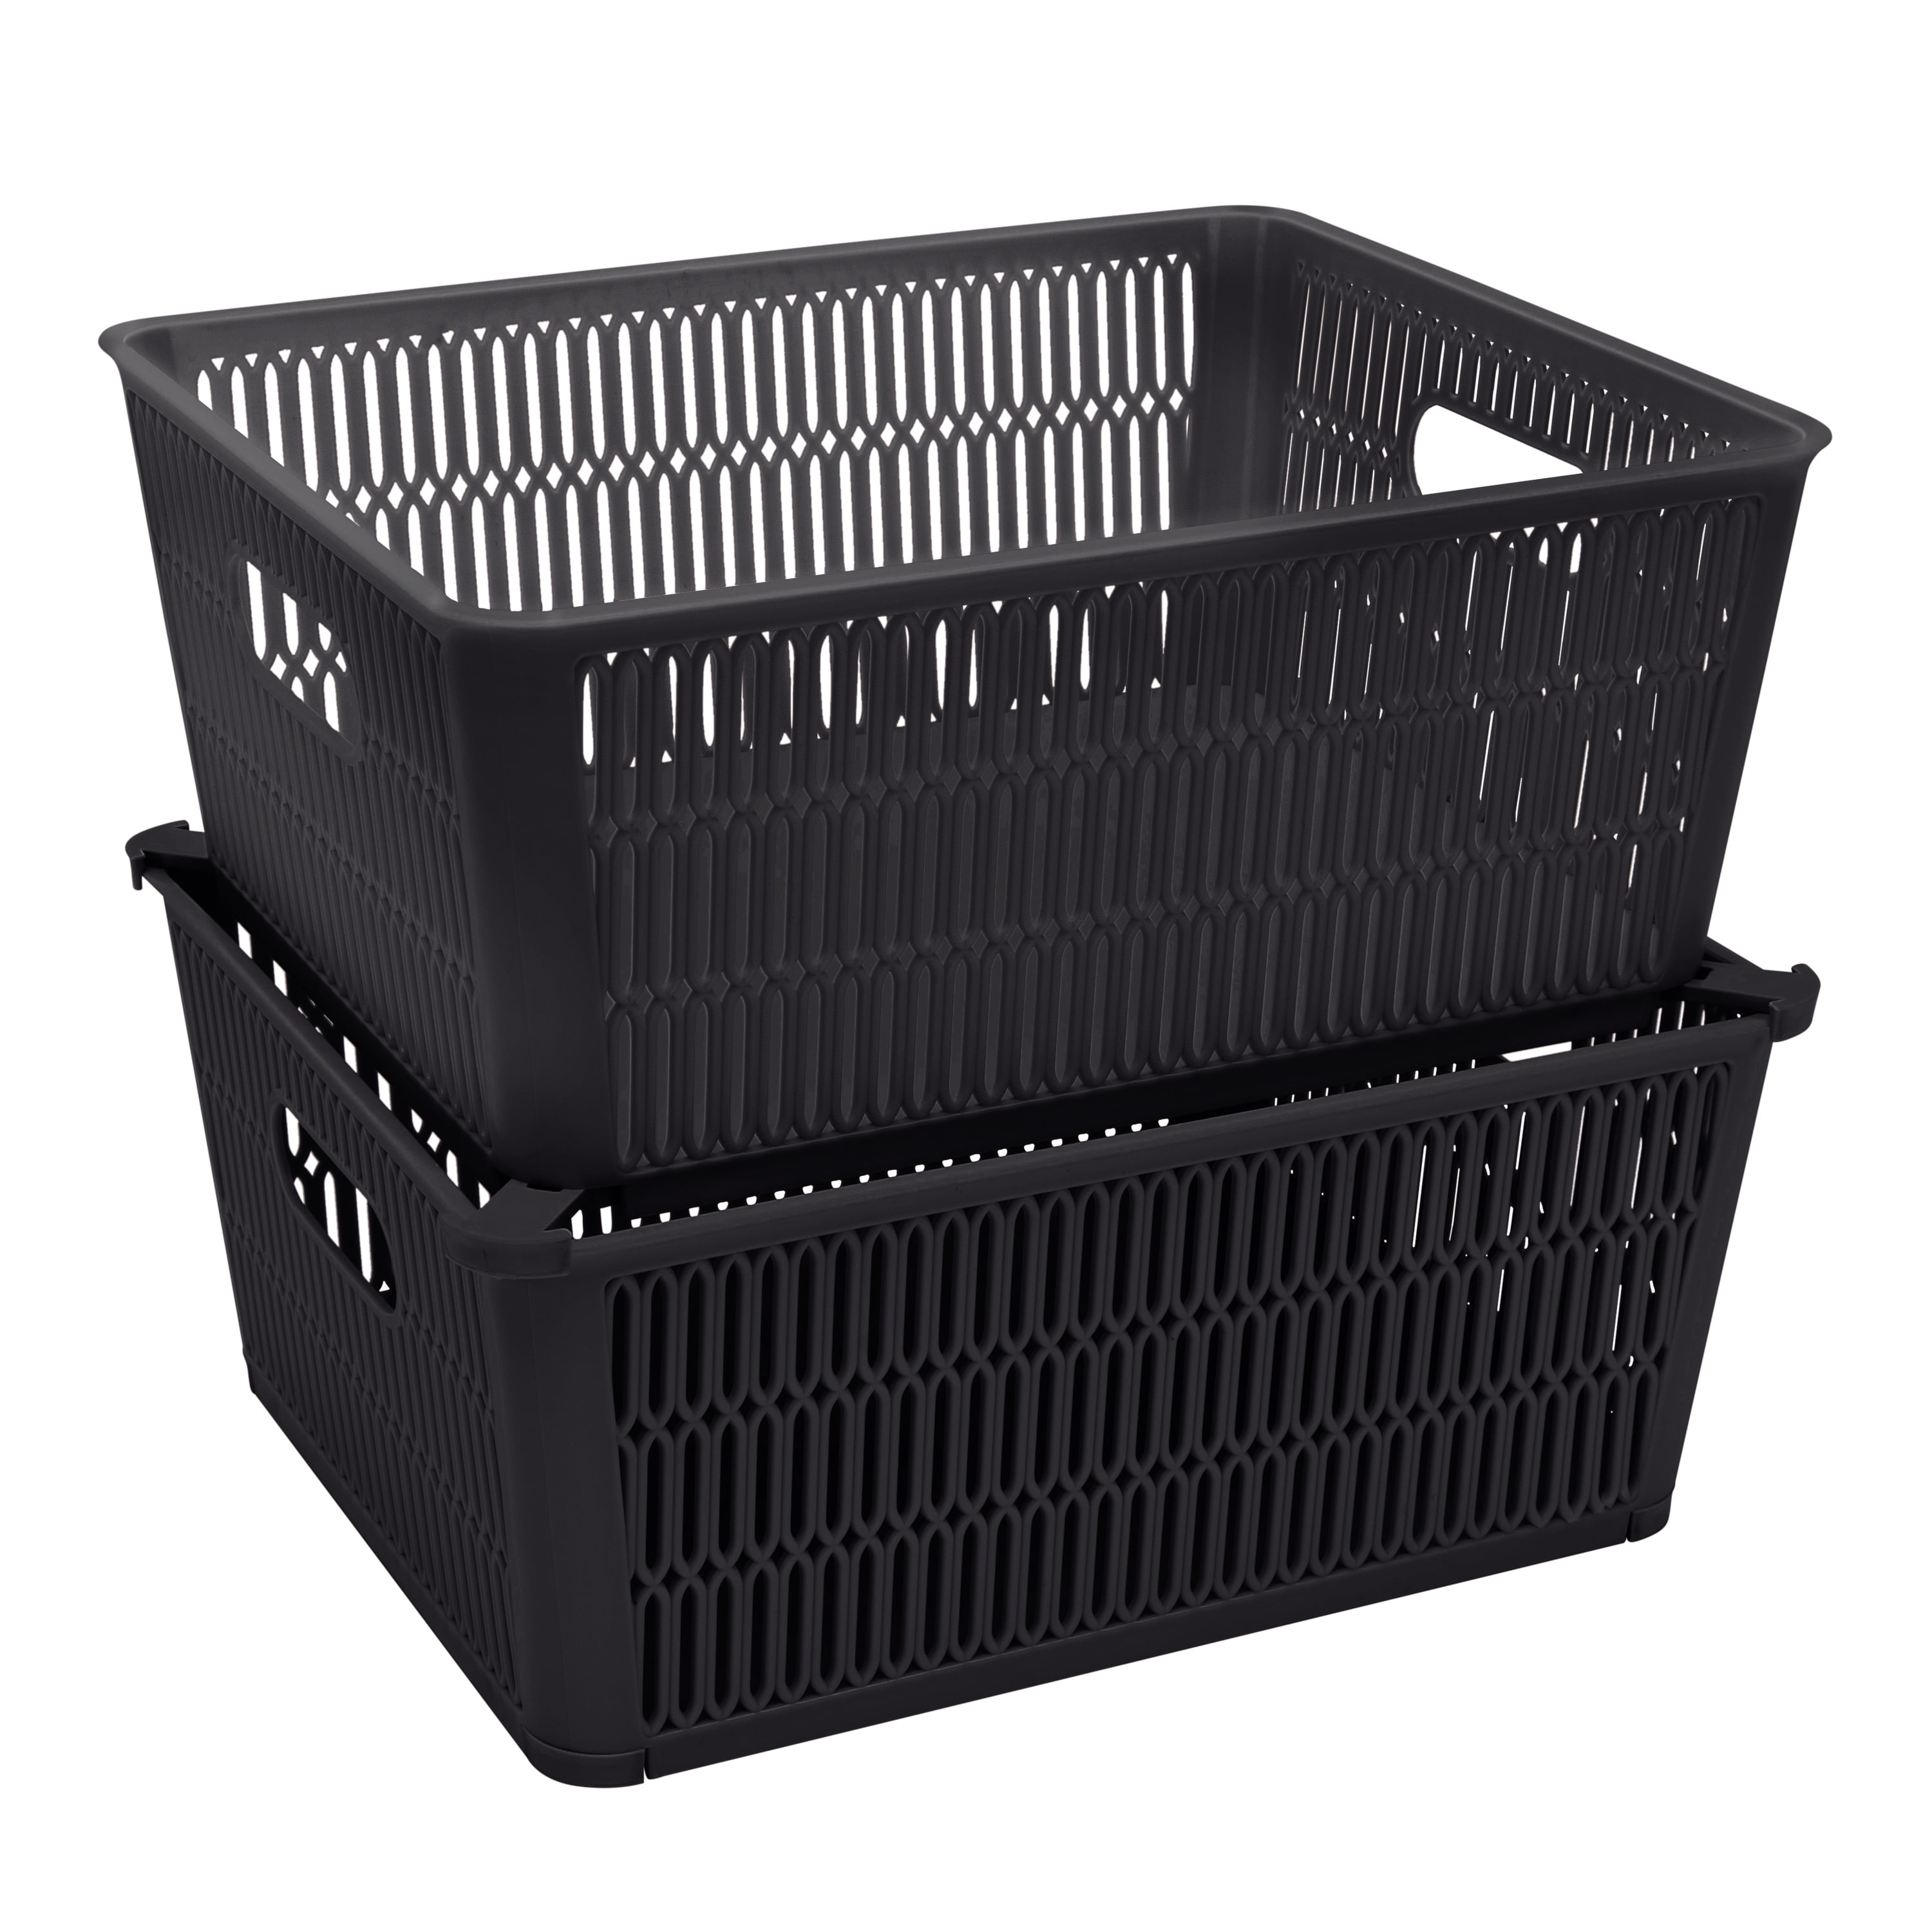  Bekith 9 Pack Plastic Storage Basket, Woven Basket Bins  Organizer, 9.75-Inch x 7.5-Inch x 4-Inch : Home & Kitchen